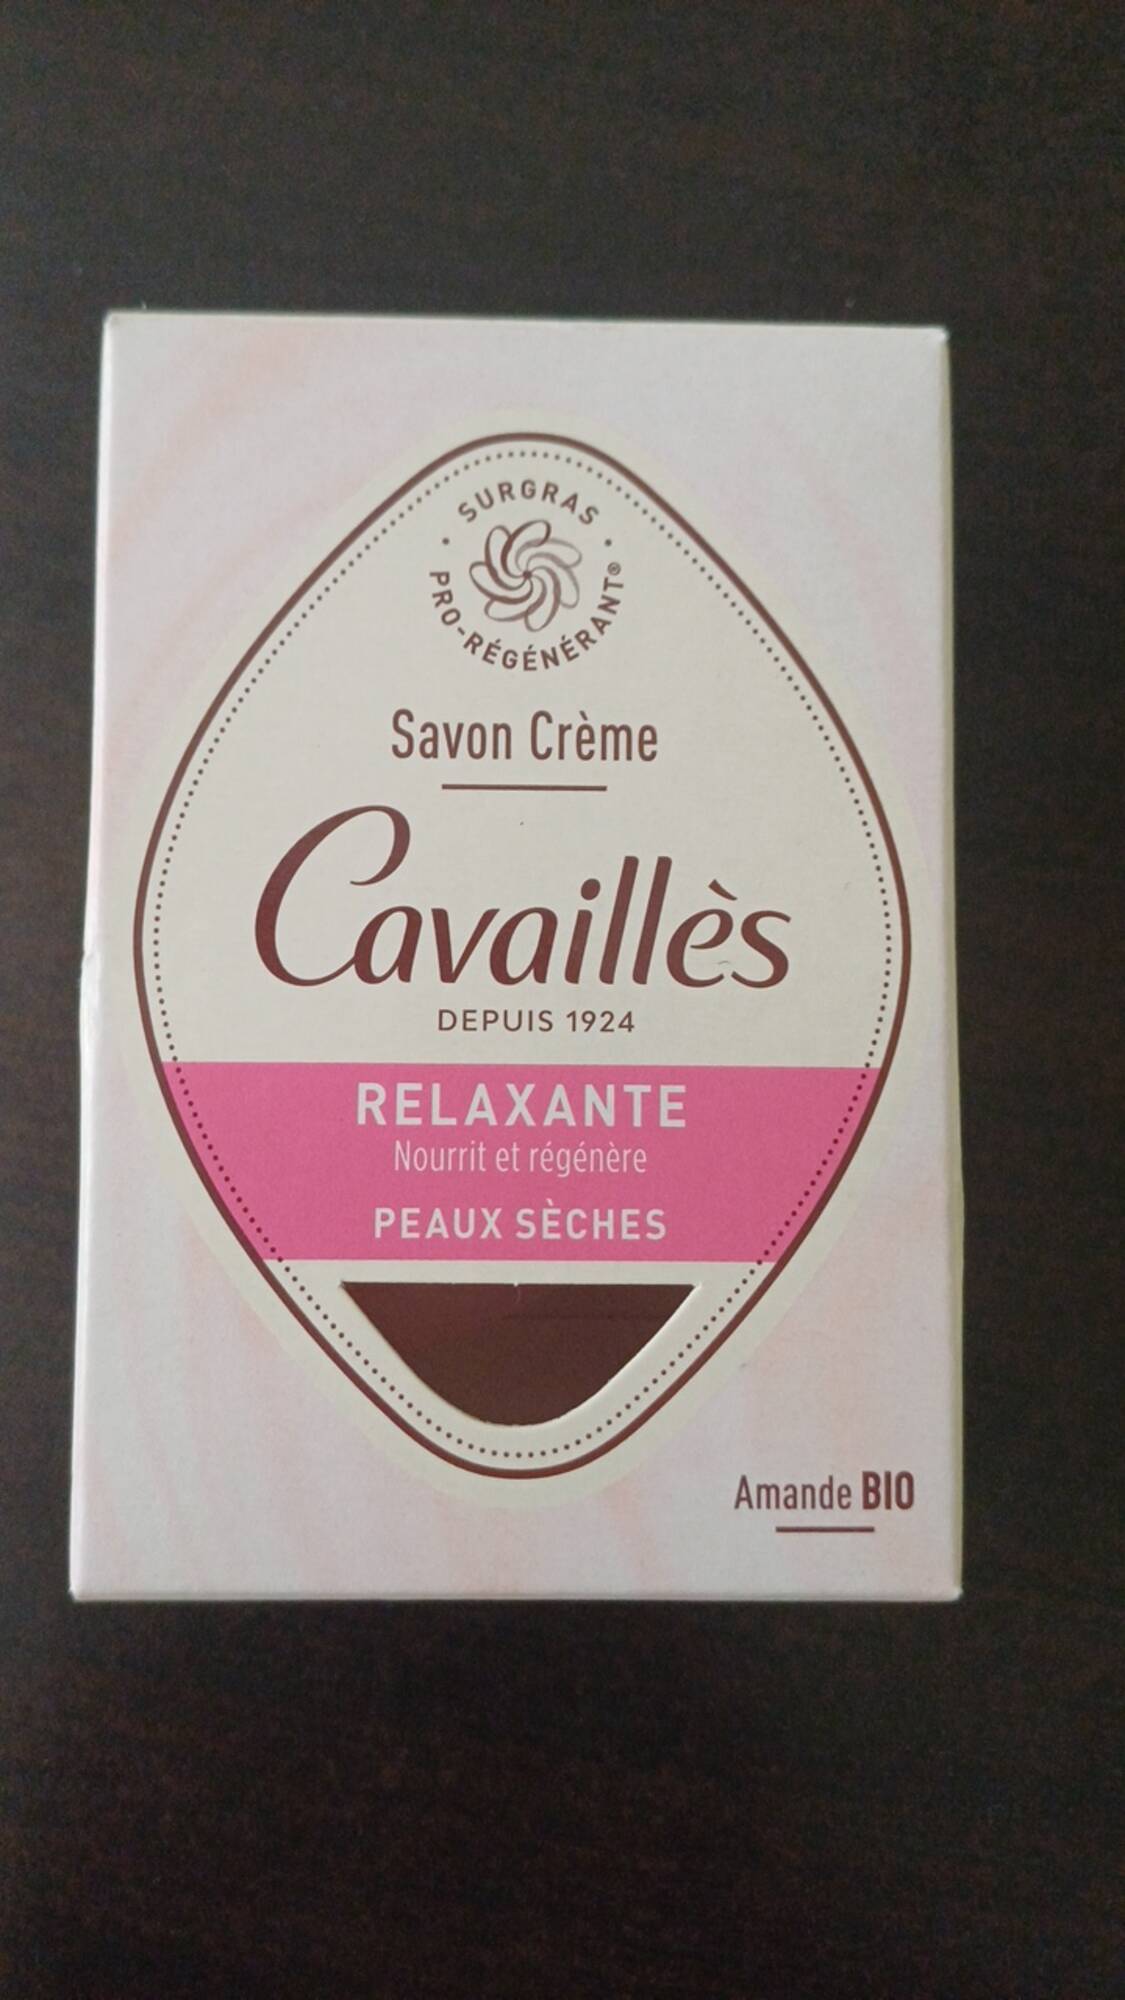 CAVAILLES - Relaxante - Savon crème